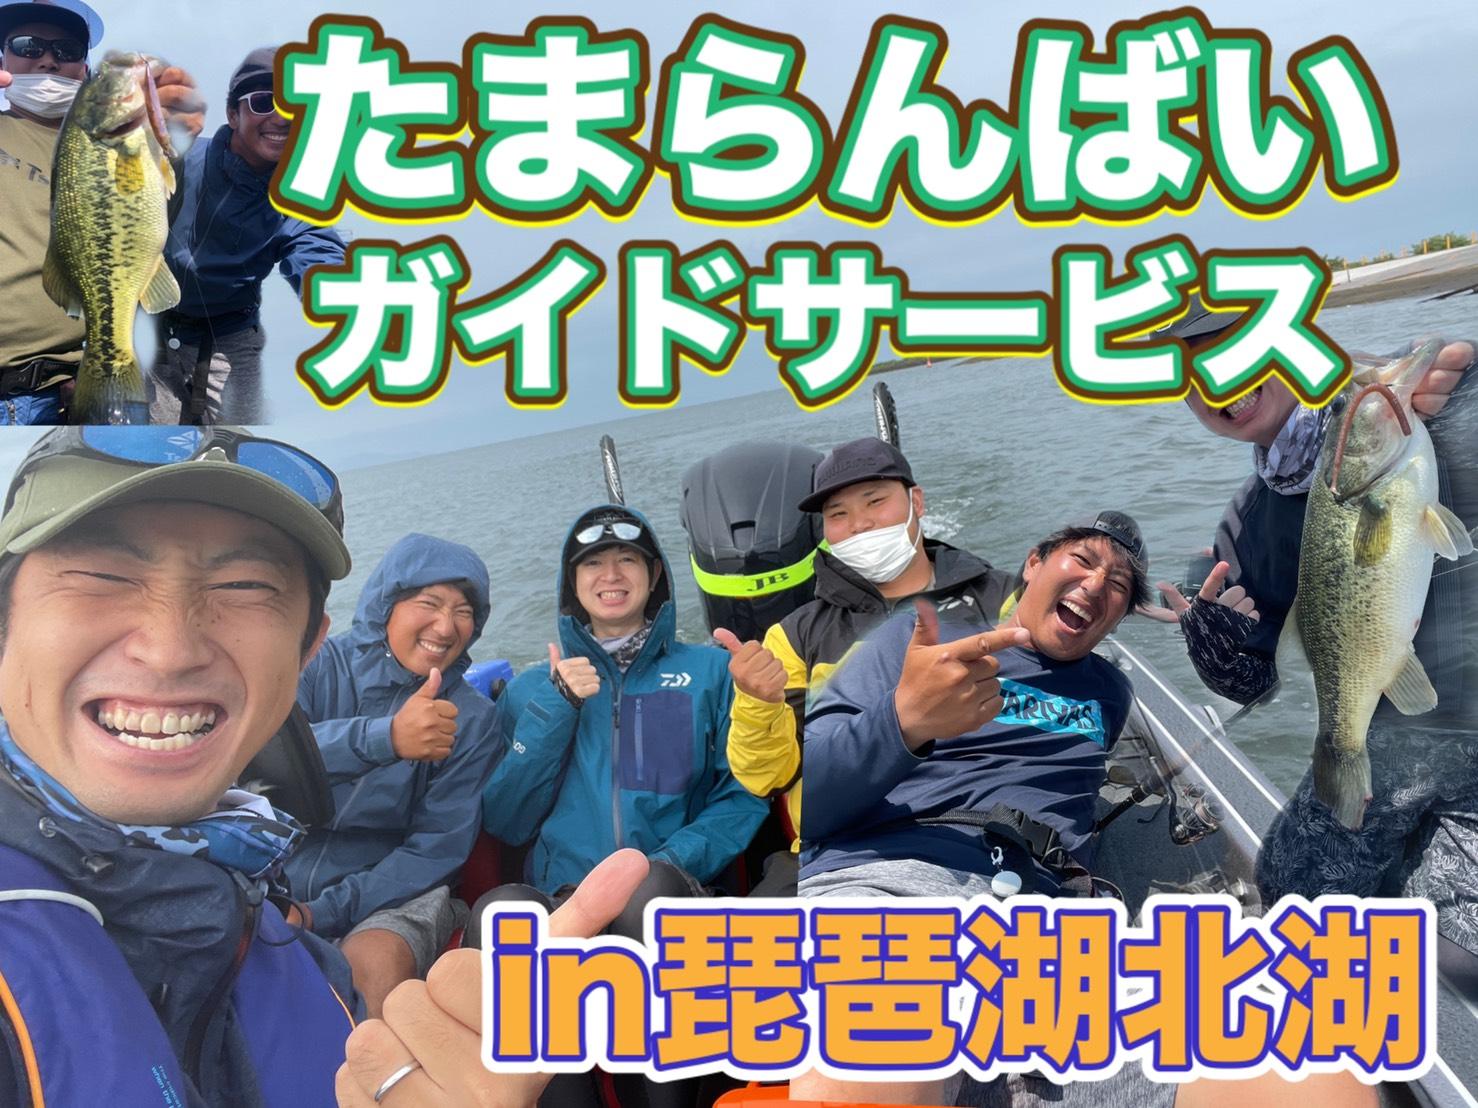 琵琶湖の超人気ガイドたまらんばい永野さんのガイドに行ってきました
ワイワイしながらのエンジョイフィッシングから大物狙いの1発勝負まで一日楽しませてもらいました!!